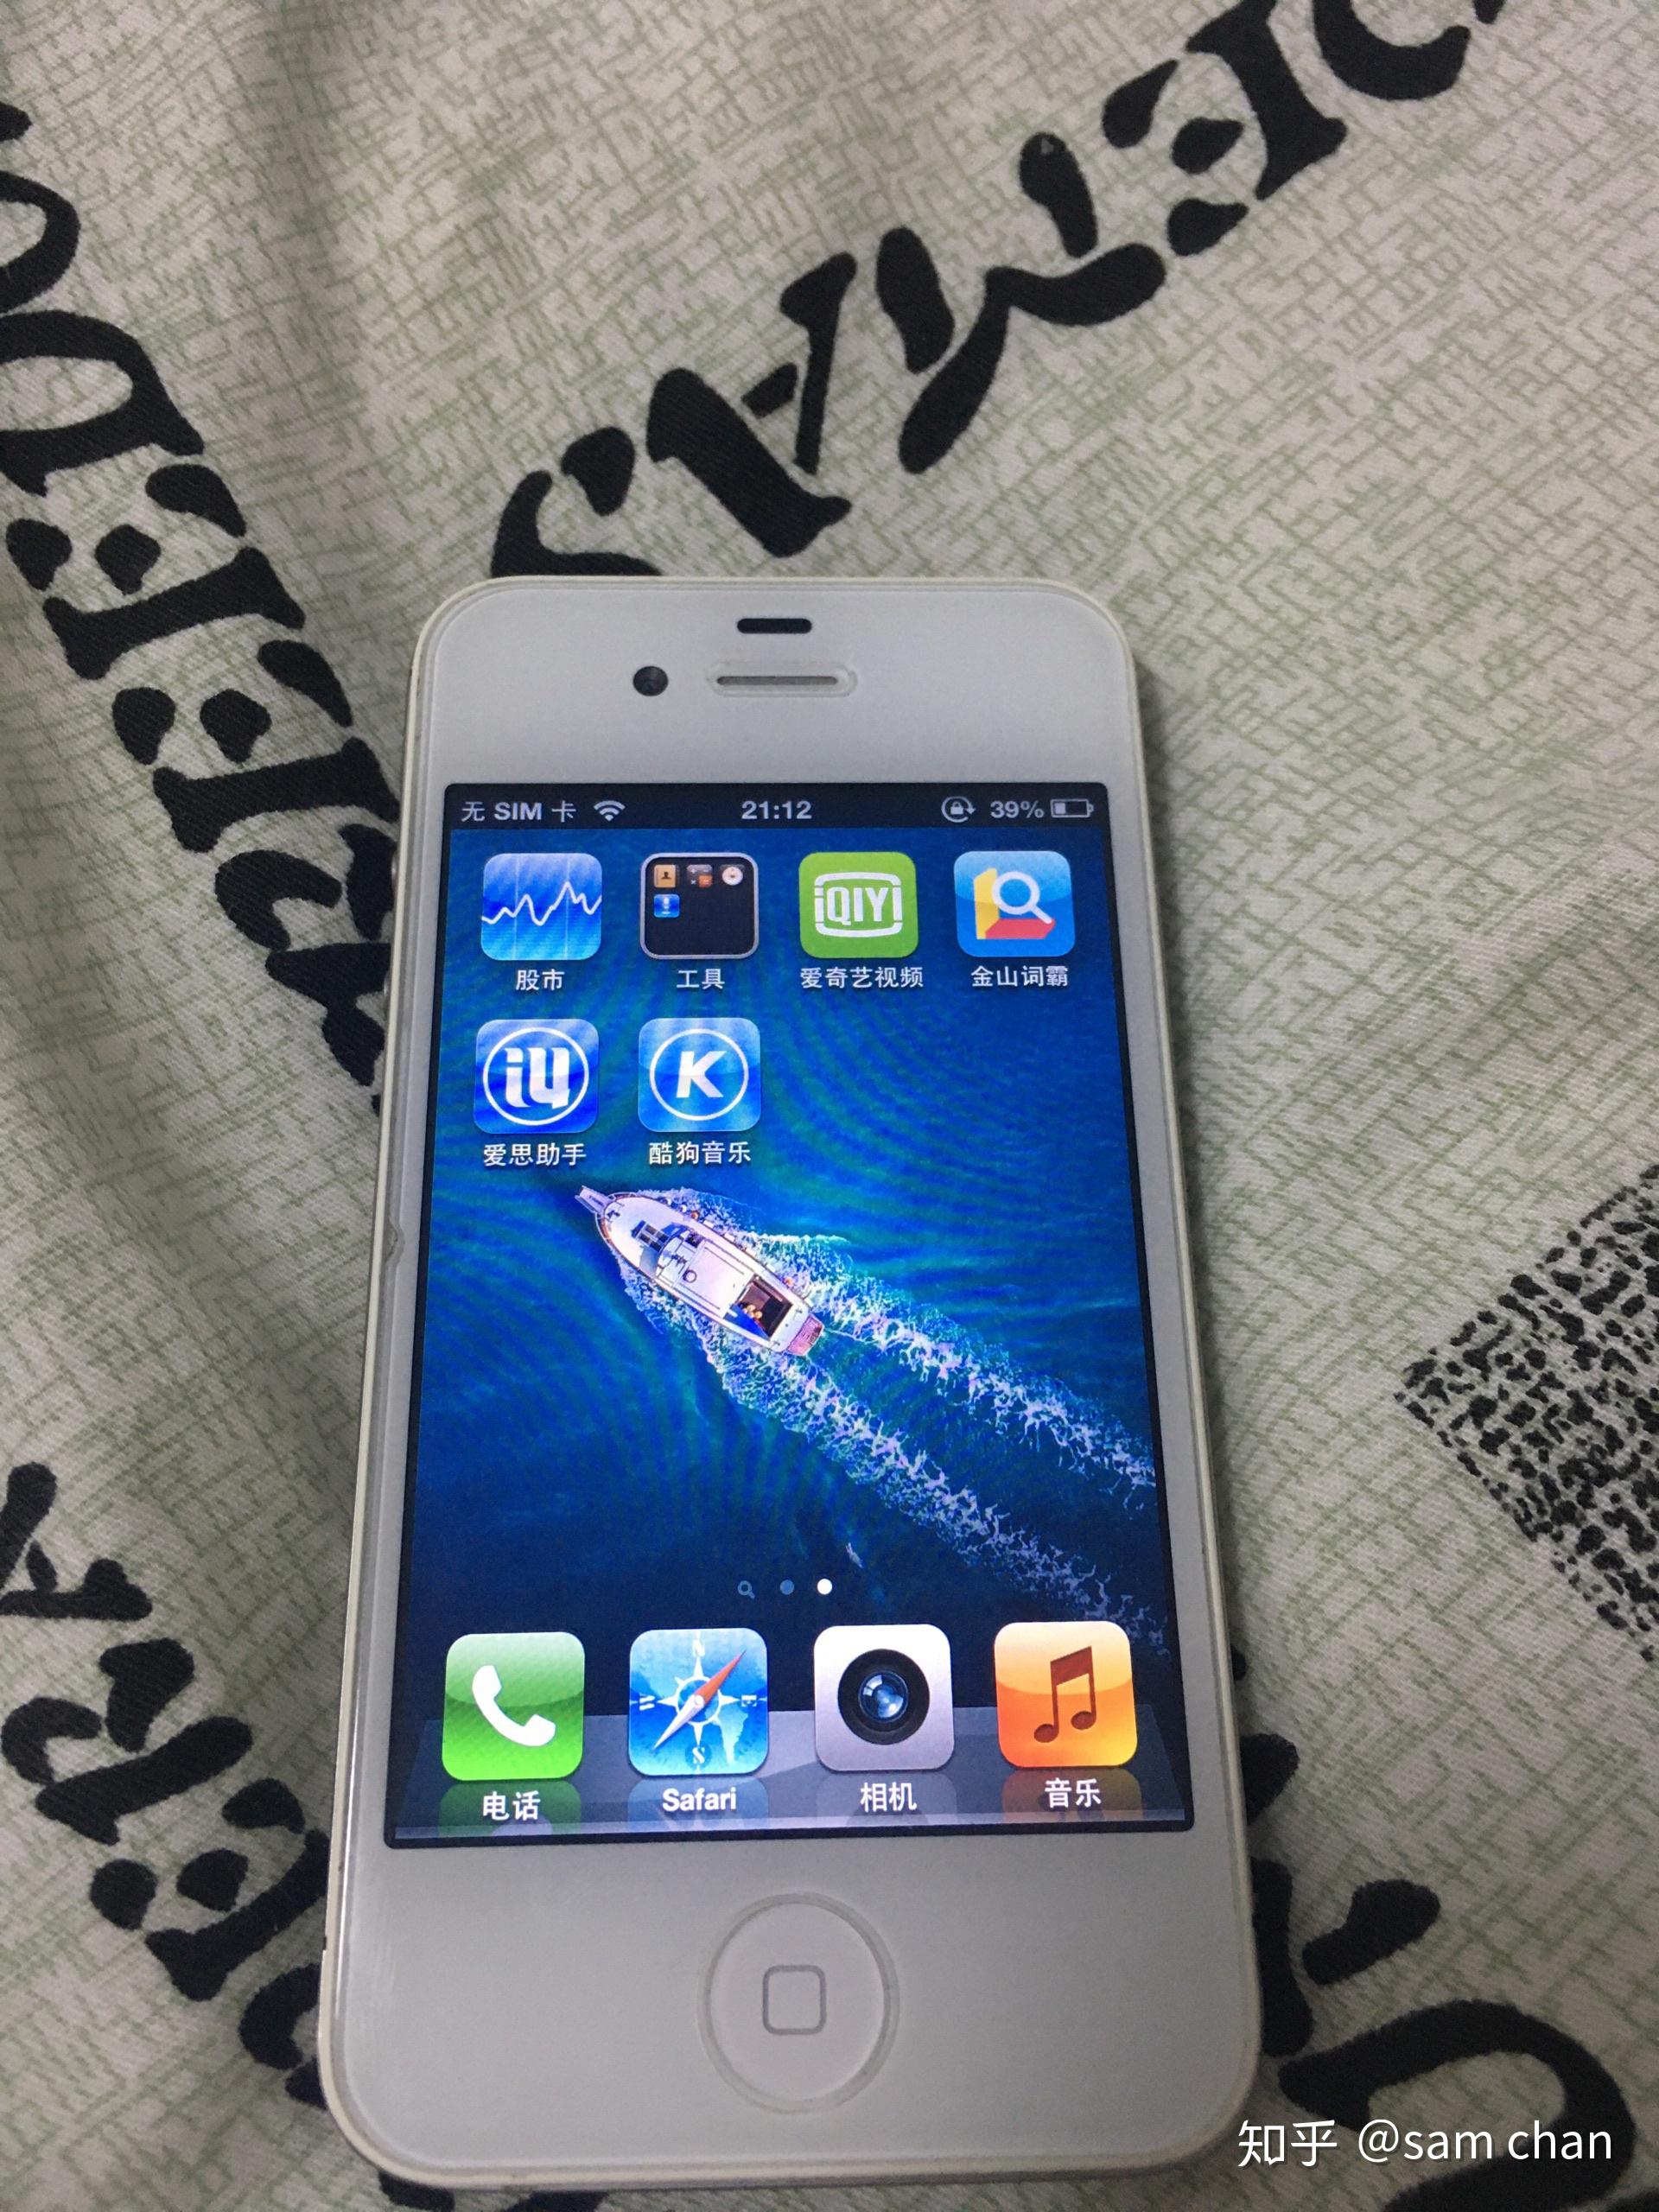 【原始大图】苹果iPhone 4S（白色）图片欣赏-ZOL中关村在线